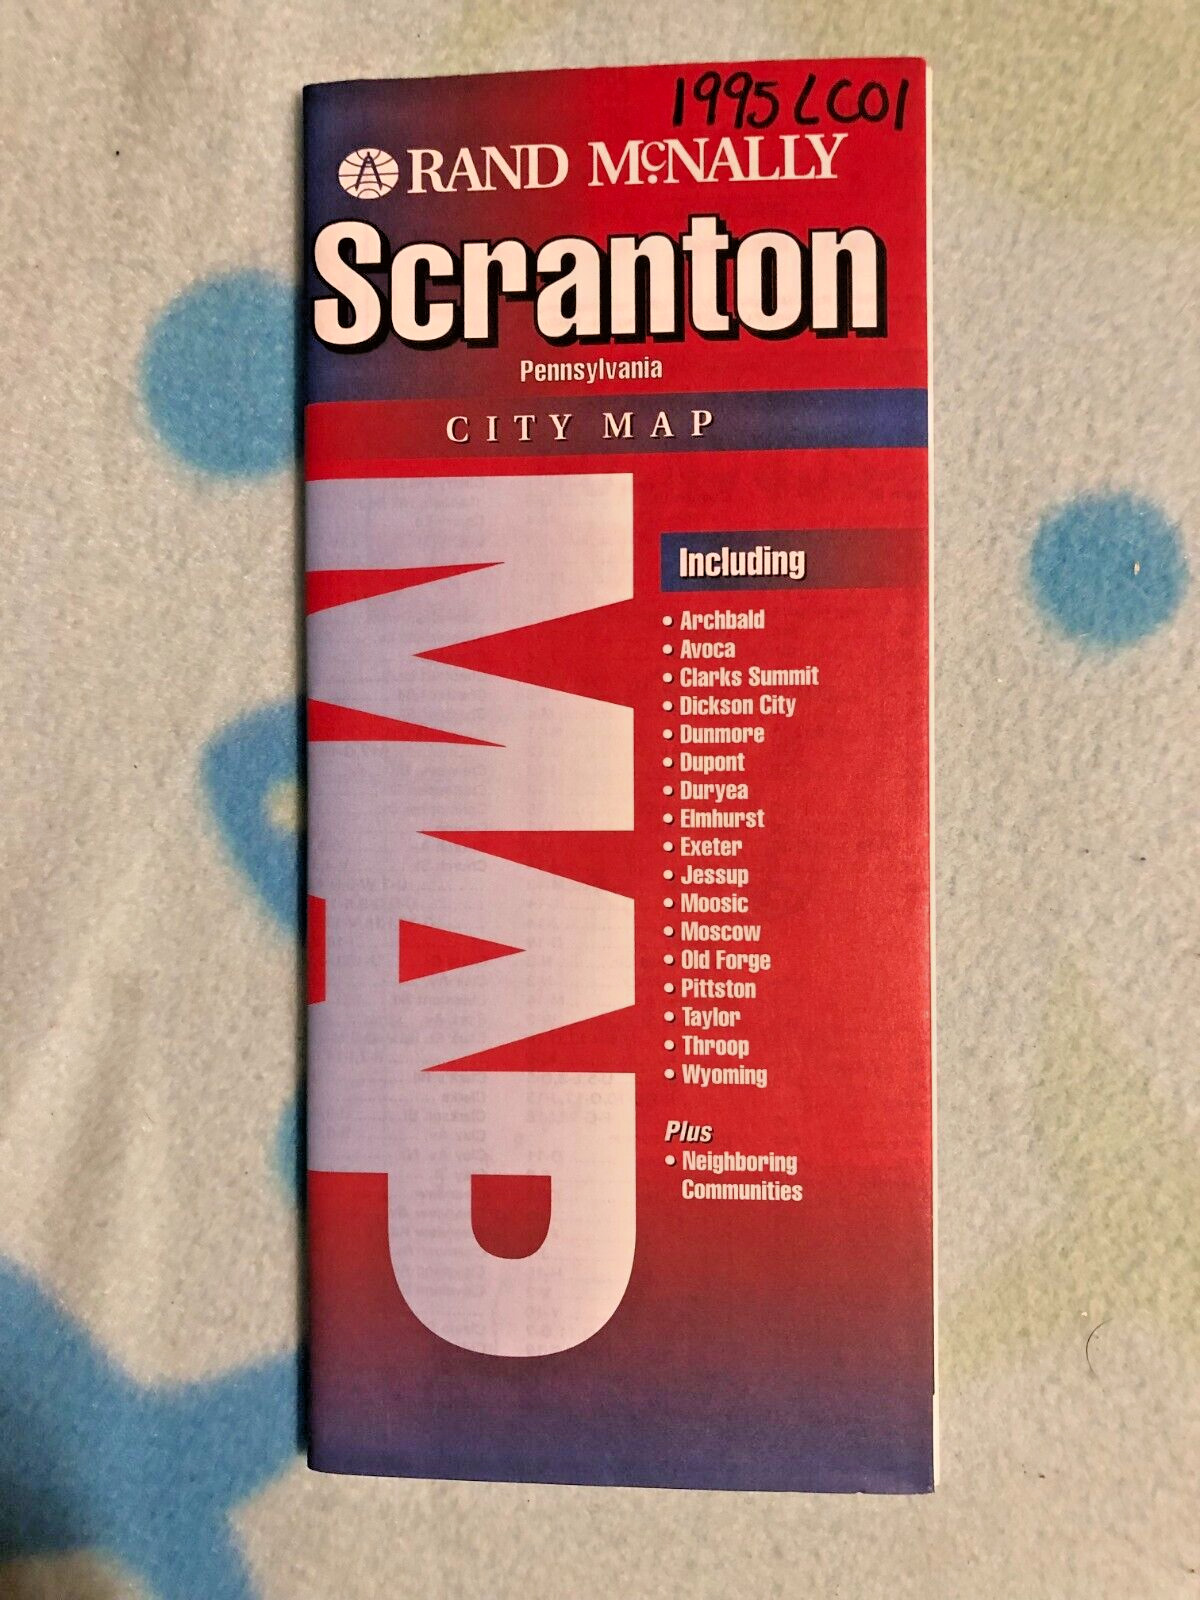 859 - Scranton Pennsylvania City Map - 1995 - Rand Mcnally